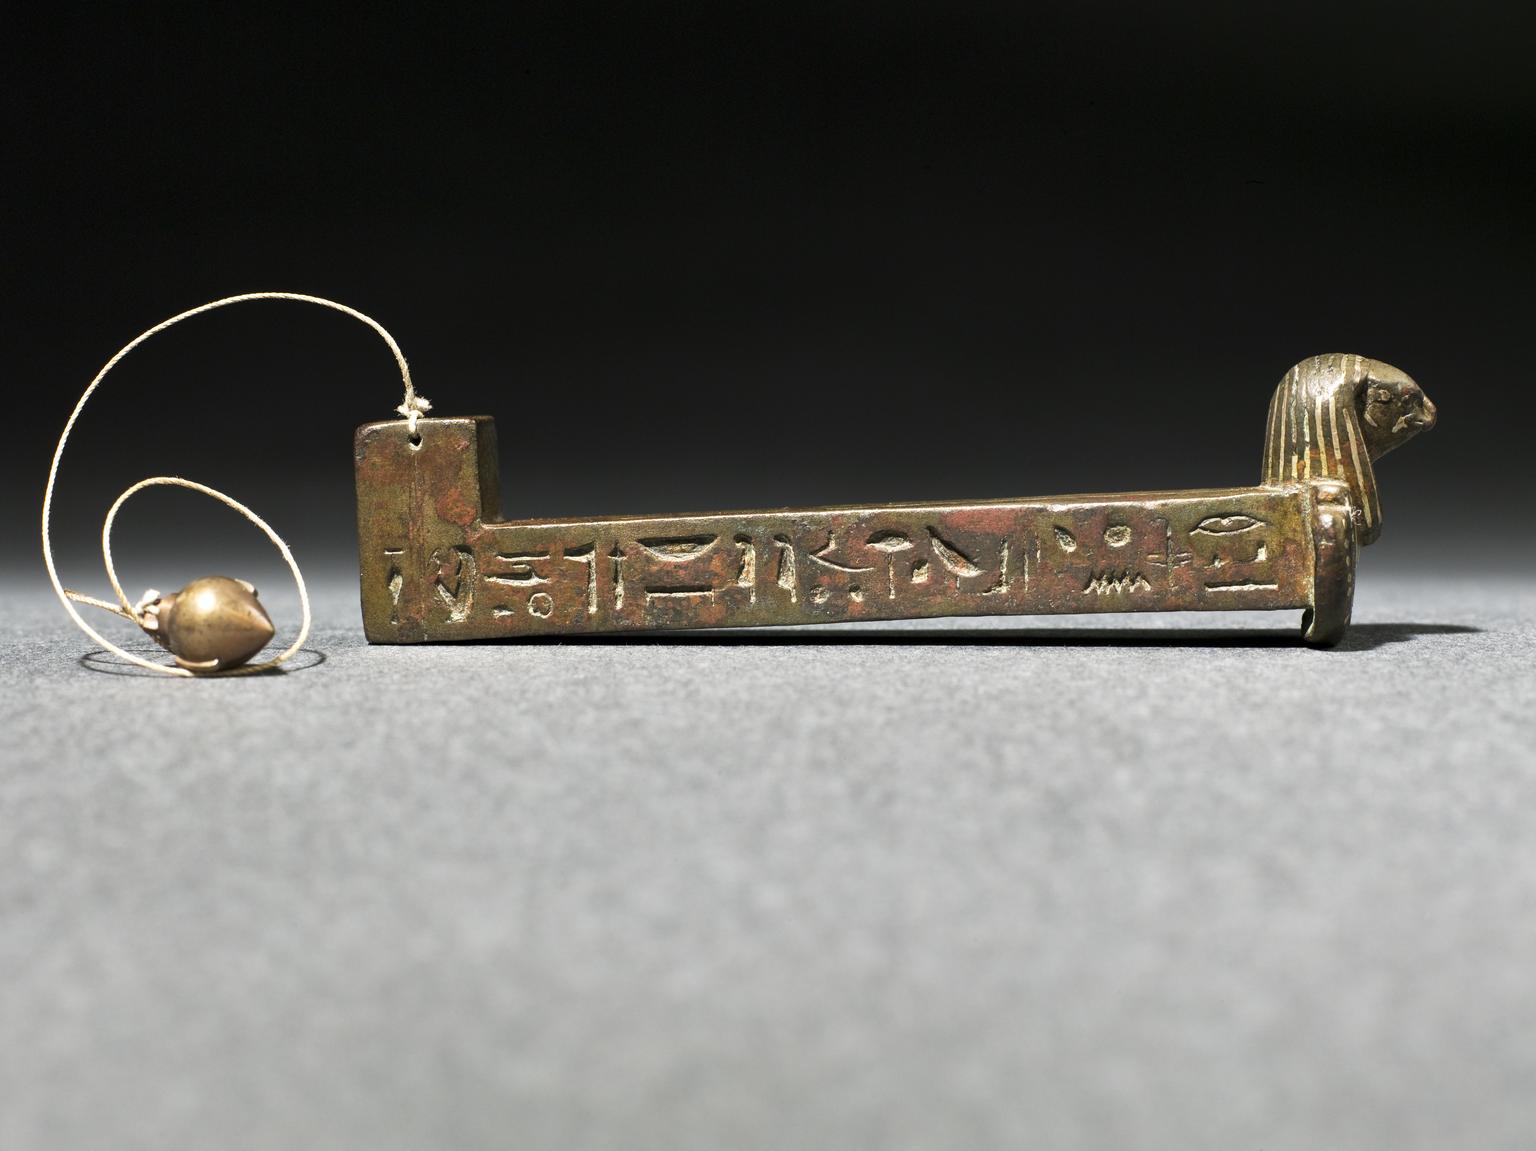 'Merkhet', instrumento de cronometraje astronómico del Antiguo Egipto, bronce con texto jeroglífico incrustado con metal electum, equipado con réplica de plub bob, 600 a.